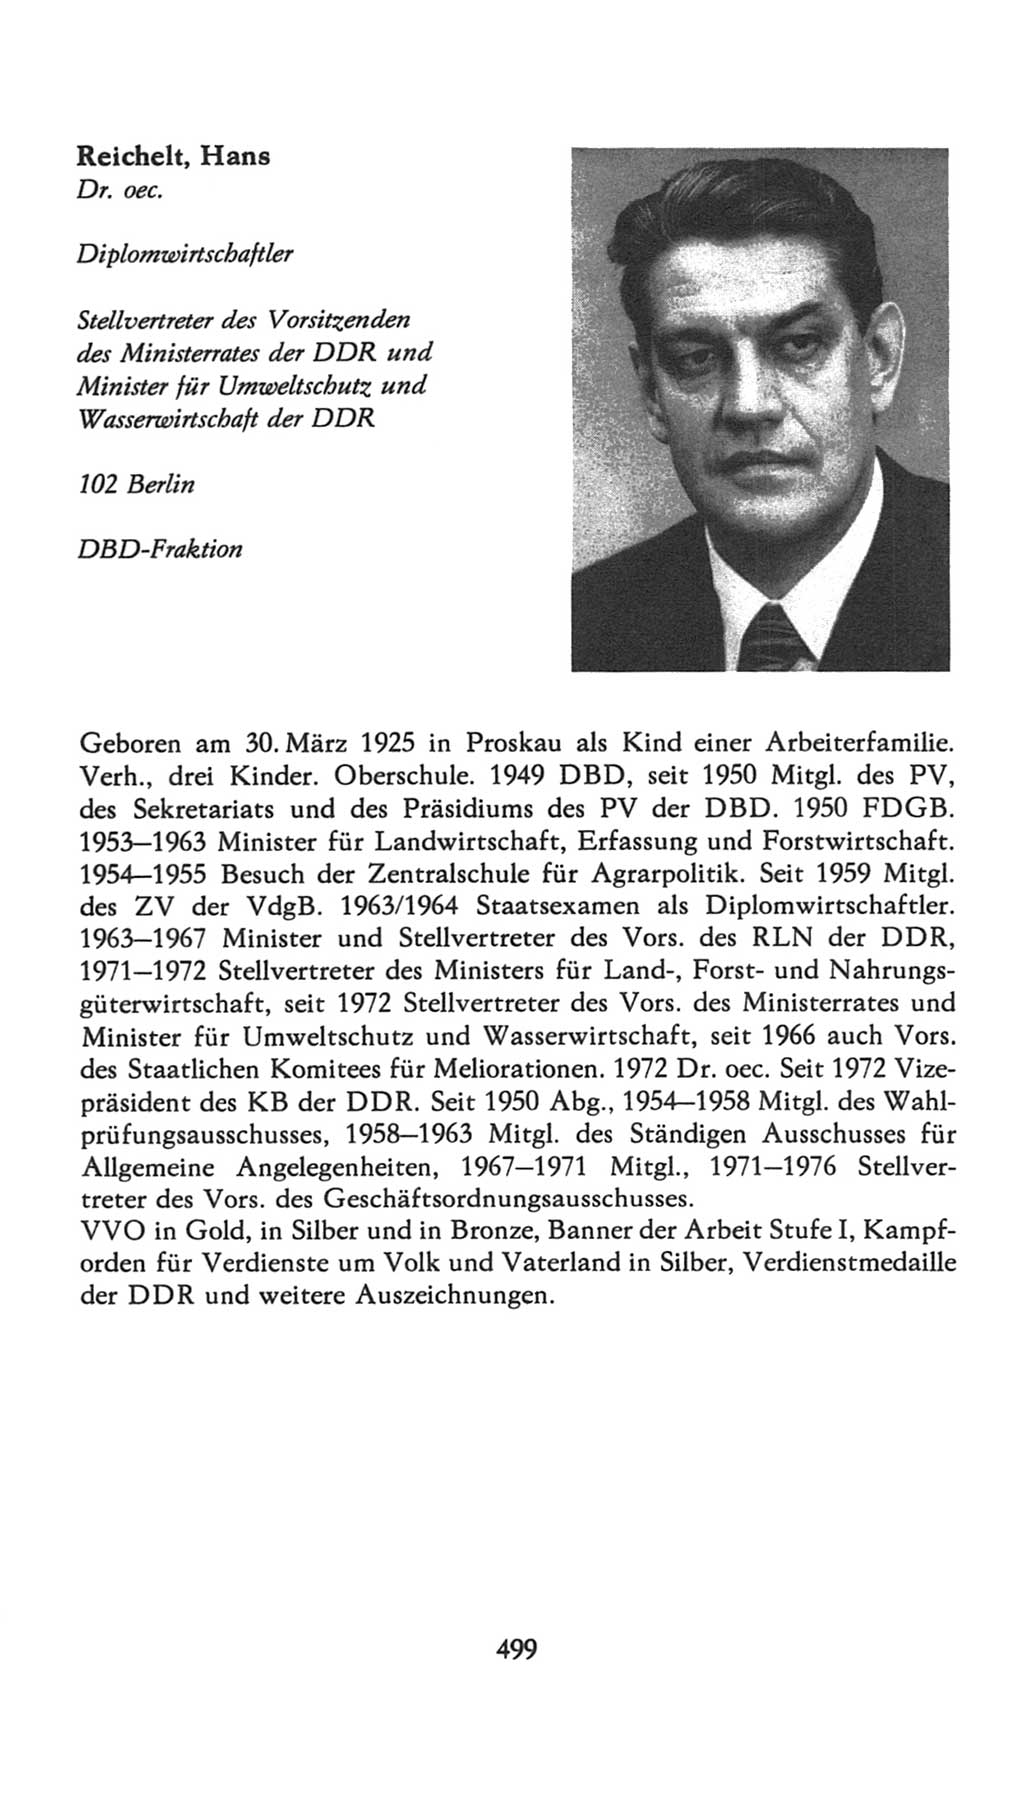 Volkskammer (VK) der Deutschen Demokratischen Republik (DDR), 7. Wahlperiode 1976-1981, Seite 499 (VK. DDR 7. WP. 1976-1981, S. 499)